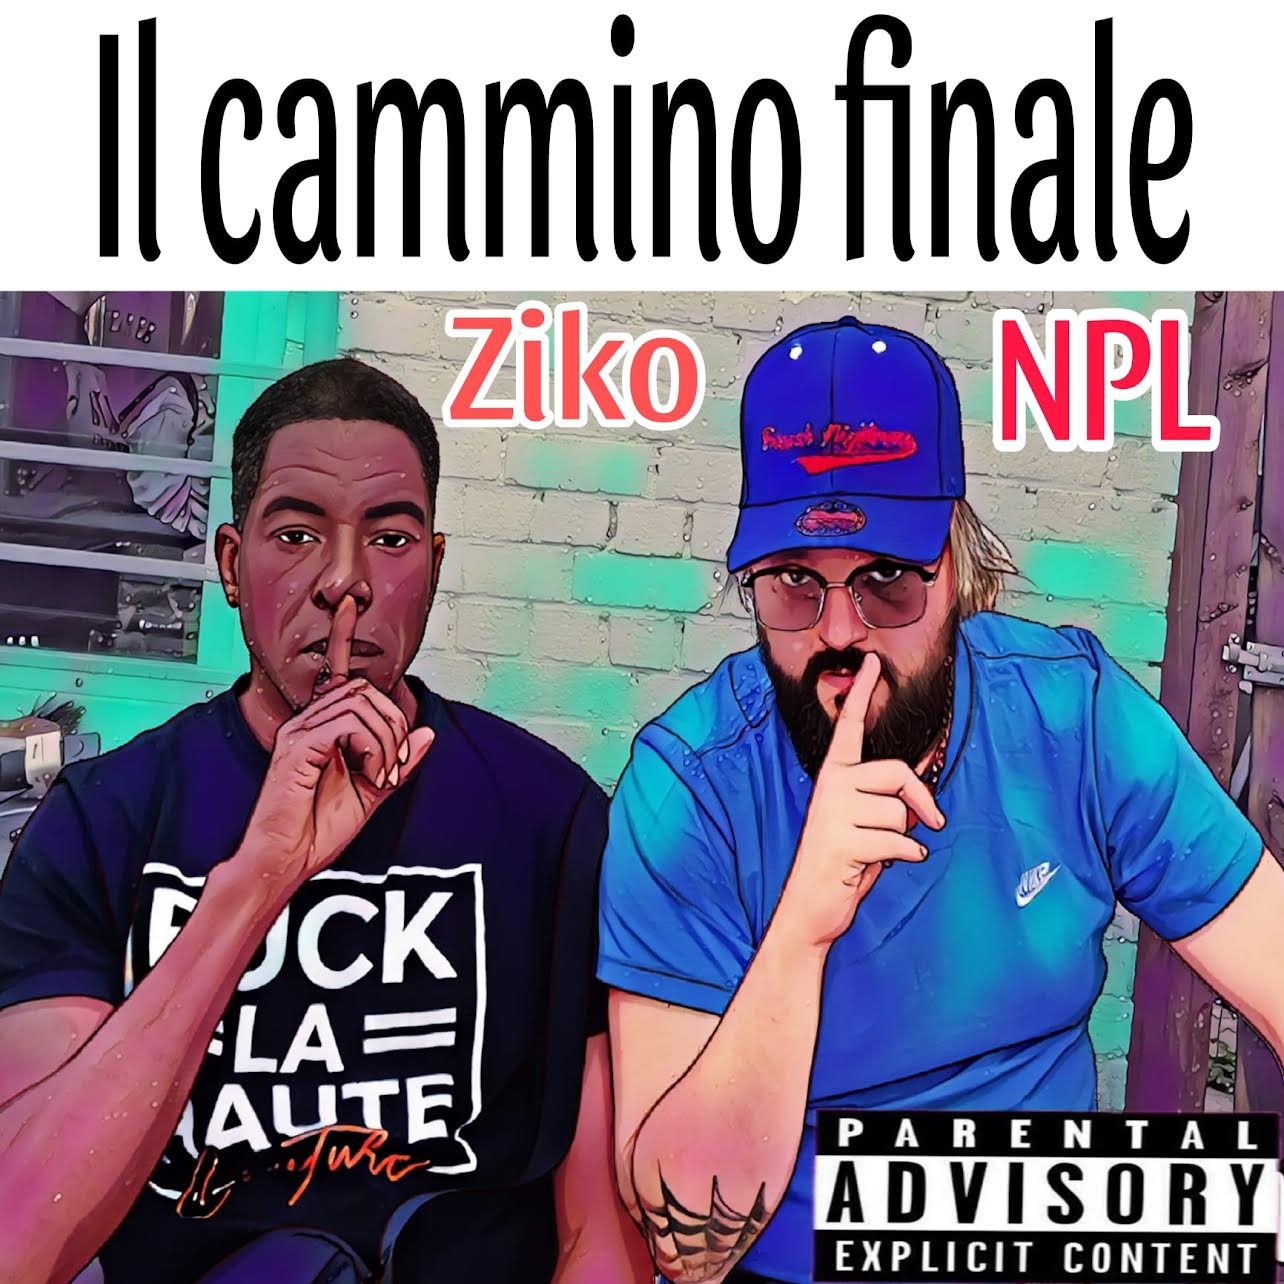 Album Cd Ermano Napoli X Ziko - ll cammino finale de sur Scredboutique.com